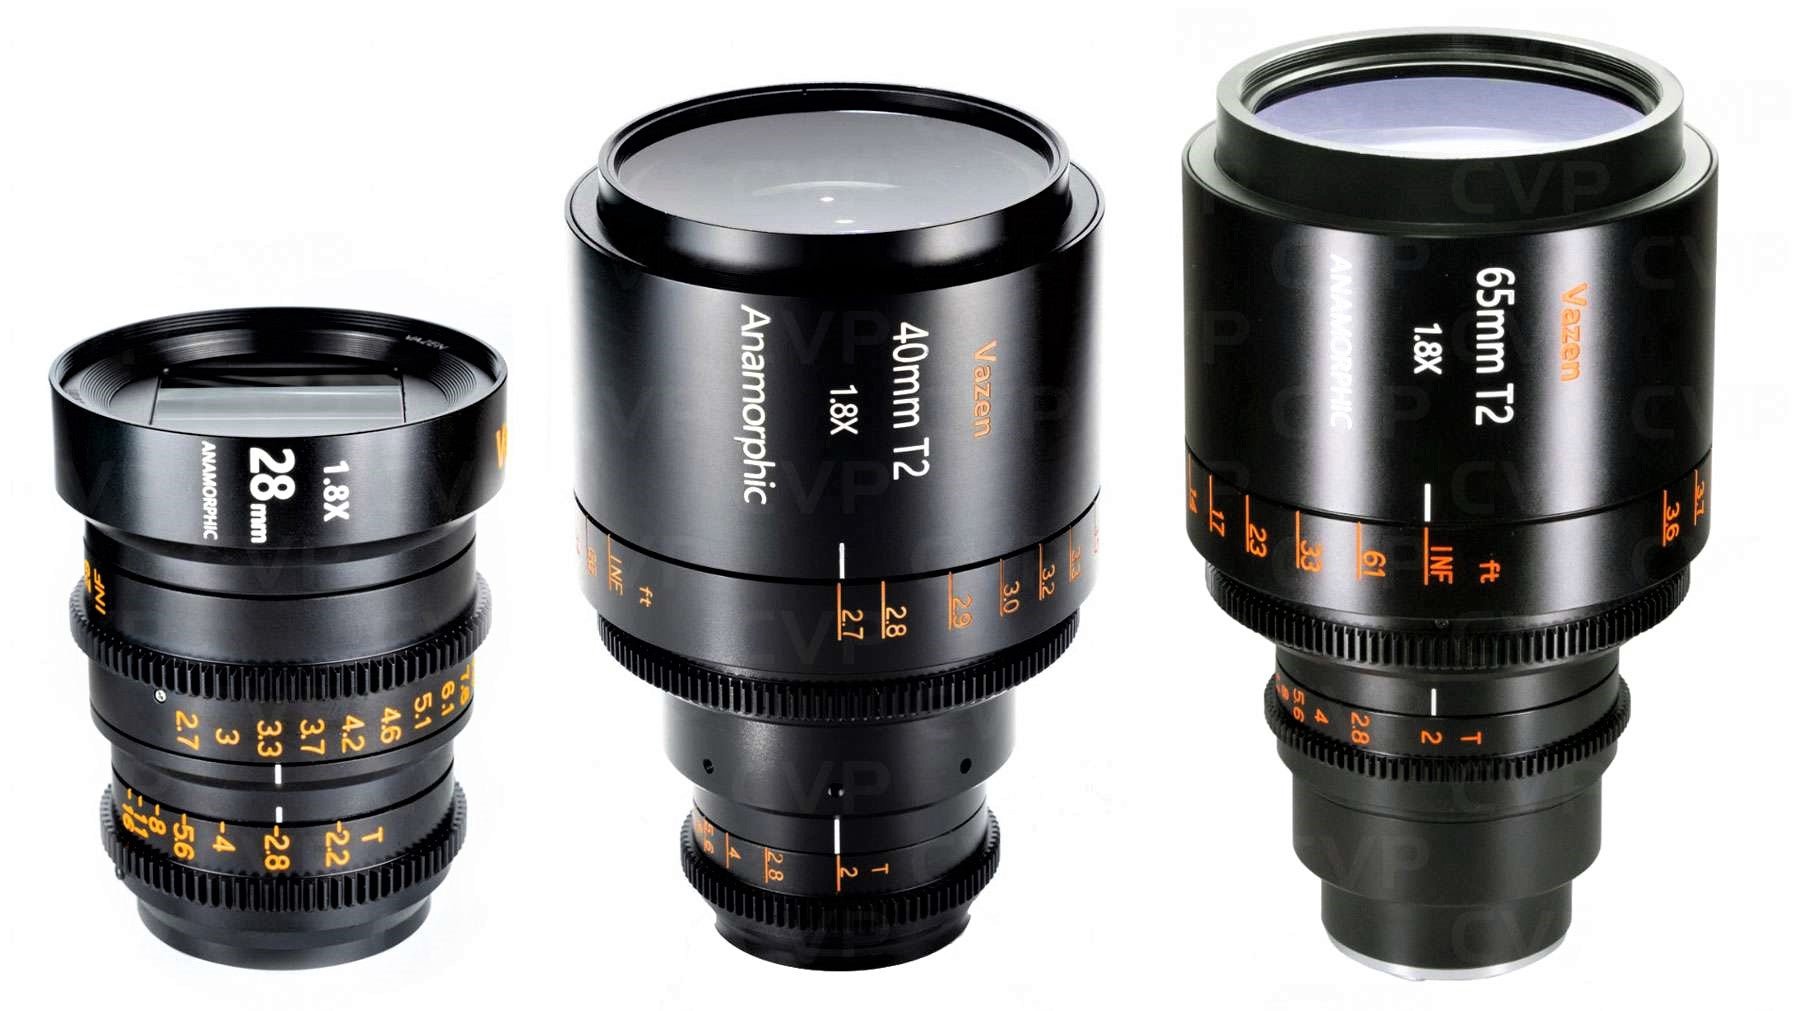 Vazen 28mm T2.2 1.8x Anamorphic Lens (Left Side), Vazen 40mm T2 1.8x Anamorphic Lens (Middle), and Vazen 65mm T2 1.8x Anamorphic Lens (Right Side)